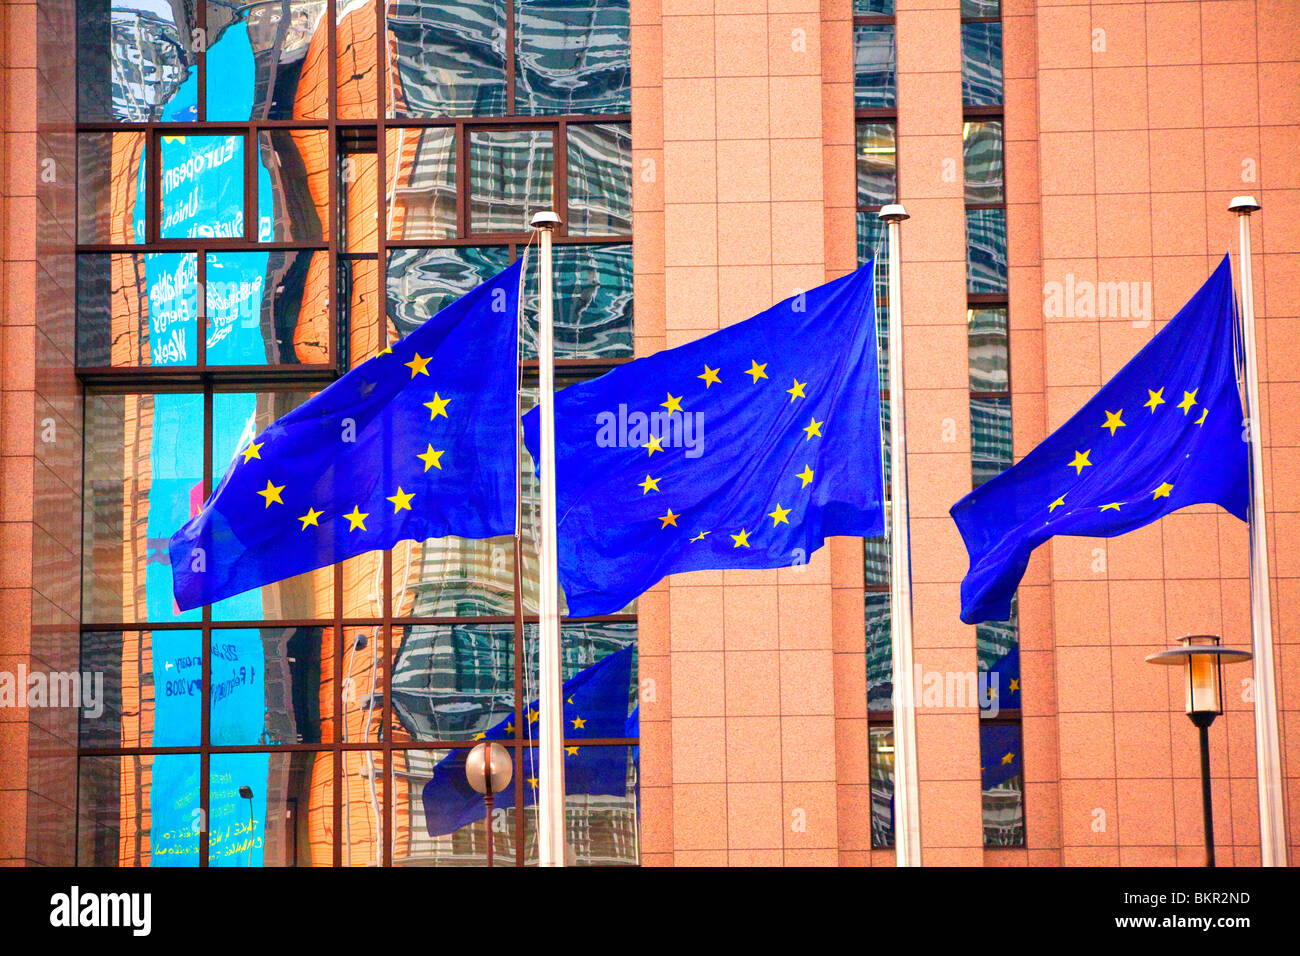 Belgique, Wallonie, Bruxelles ; trois drapeaux portant l'emblème de l'Union européenne devant le siège de l'U E Banque D'Images